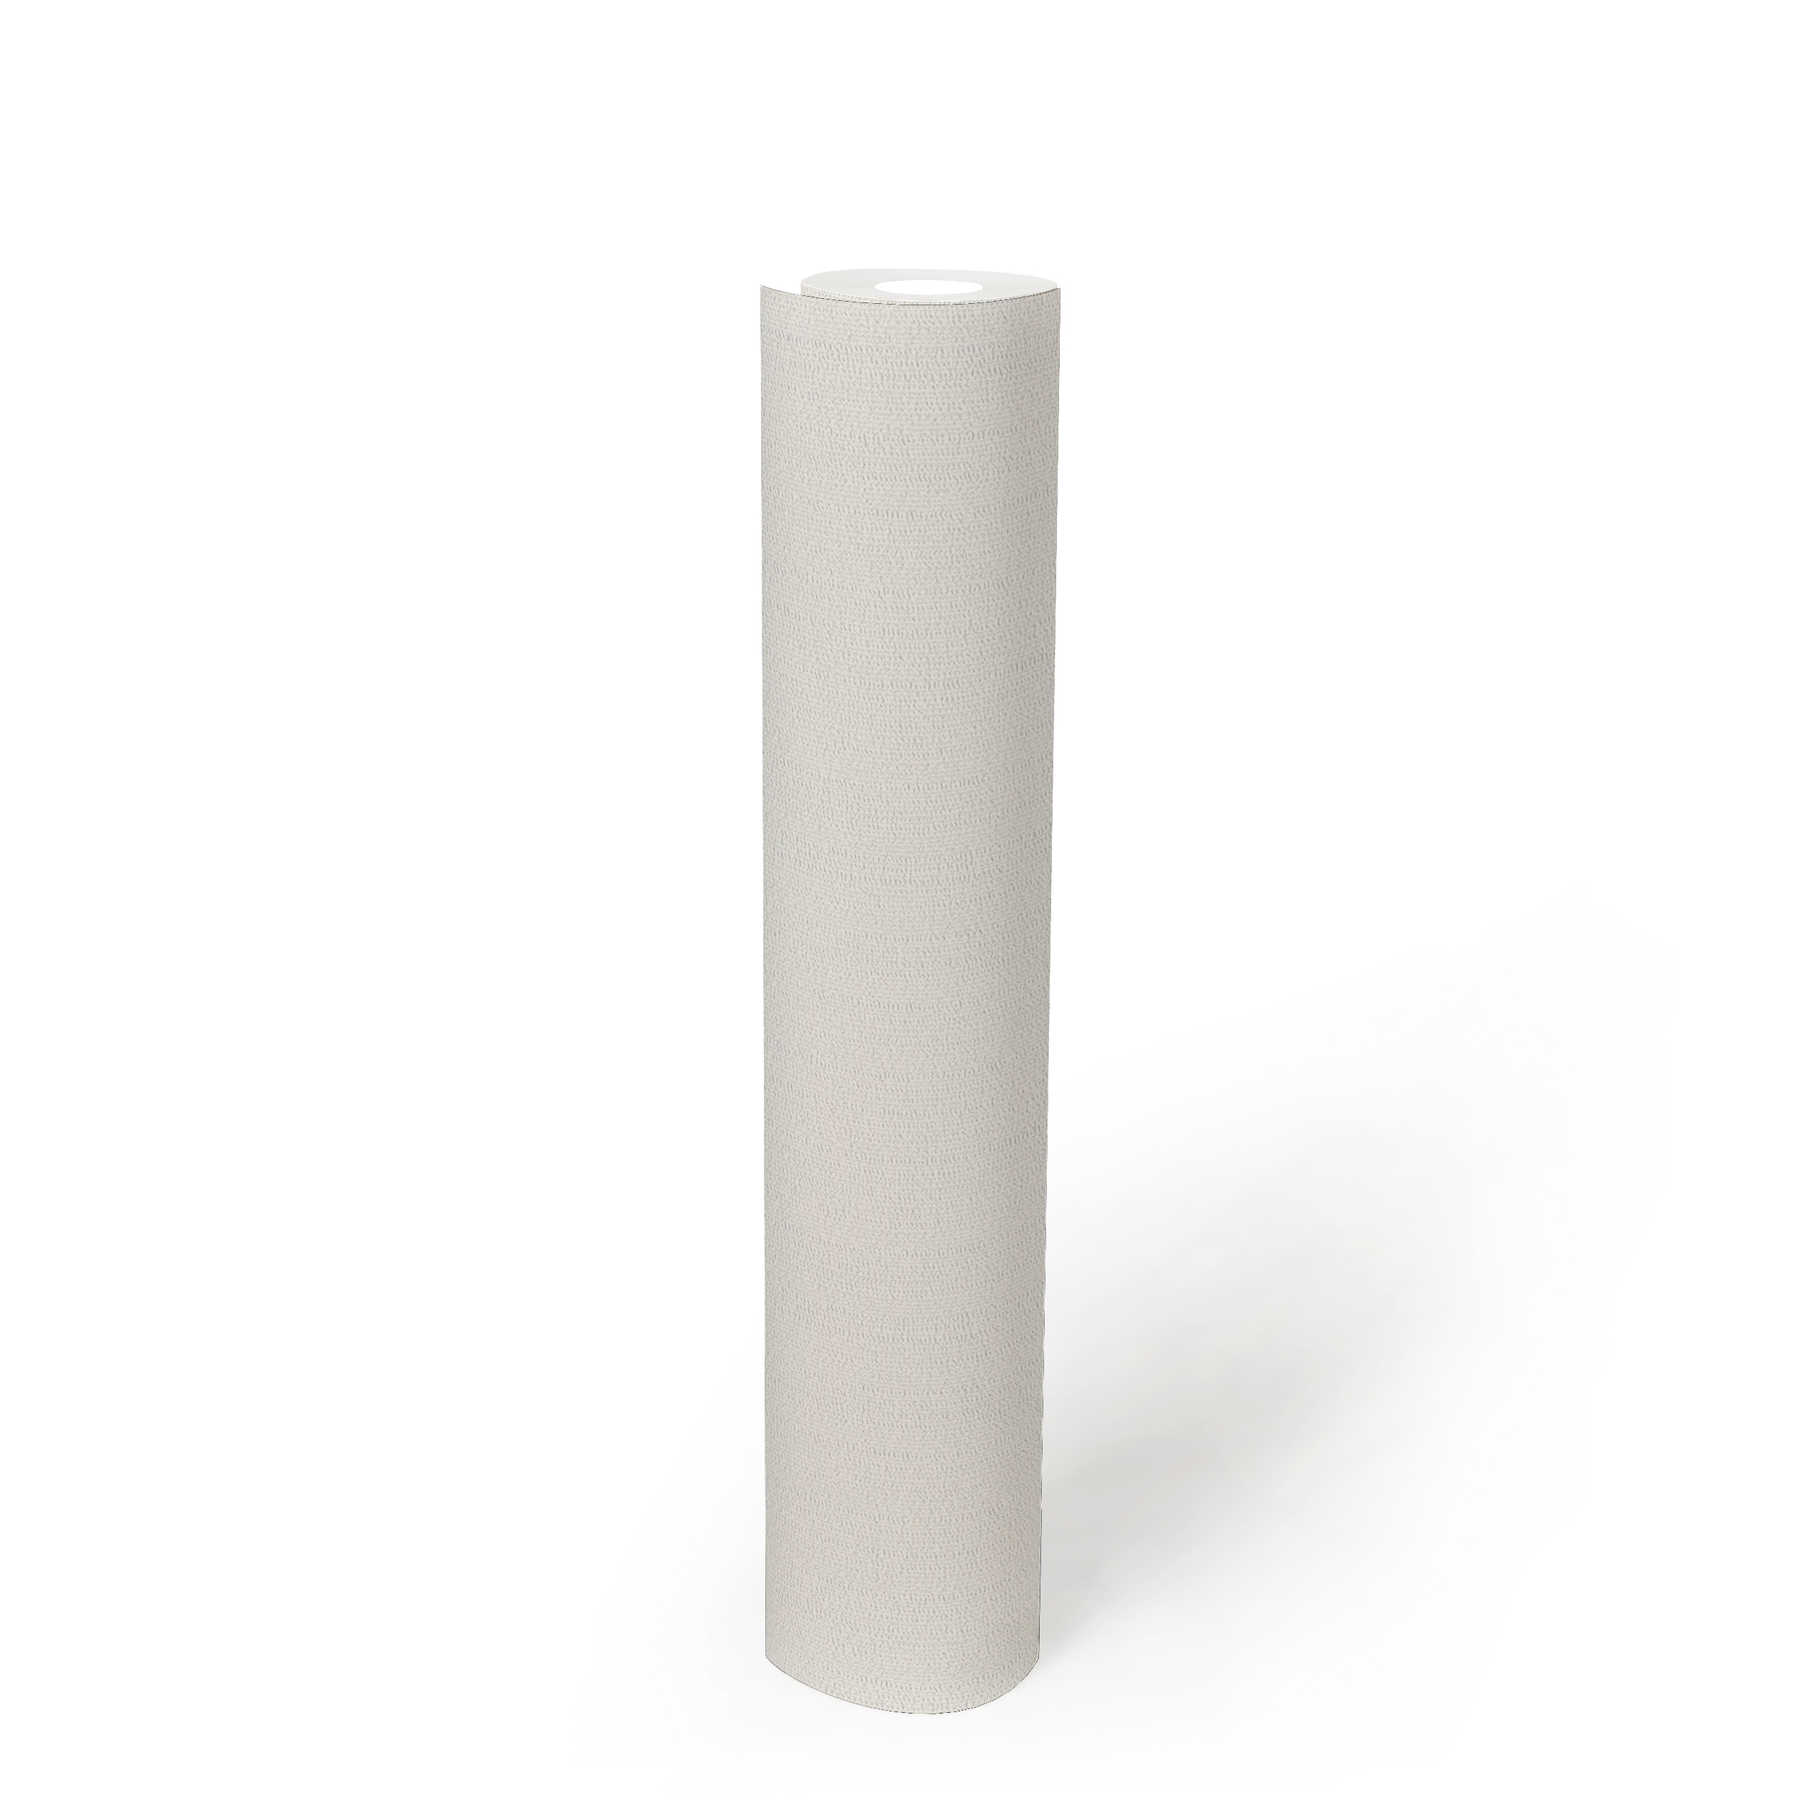             Non-woven wallpaper white monochrome, matt with foam structure
        